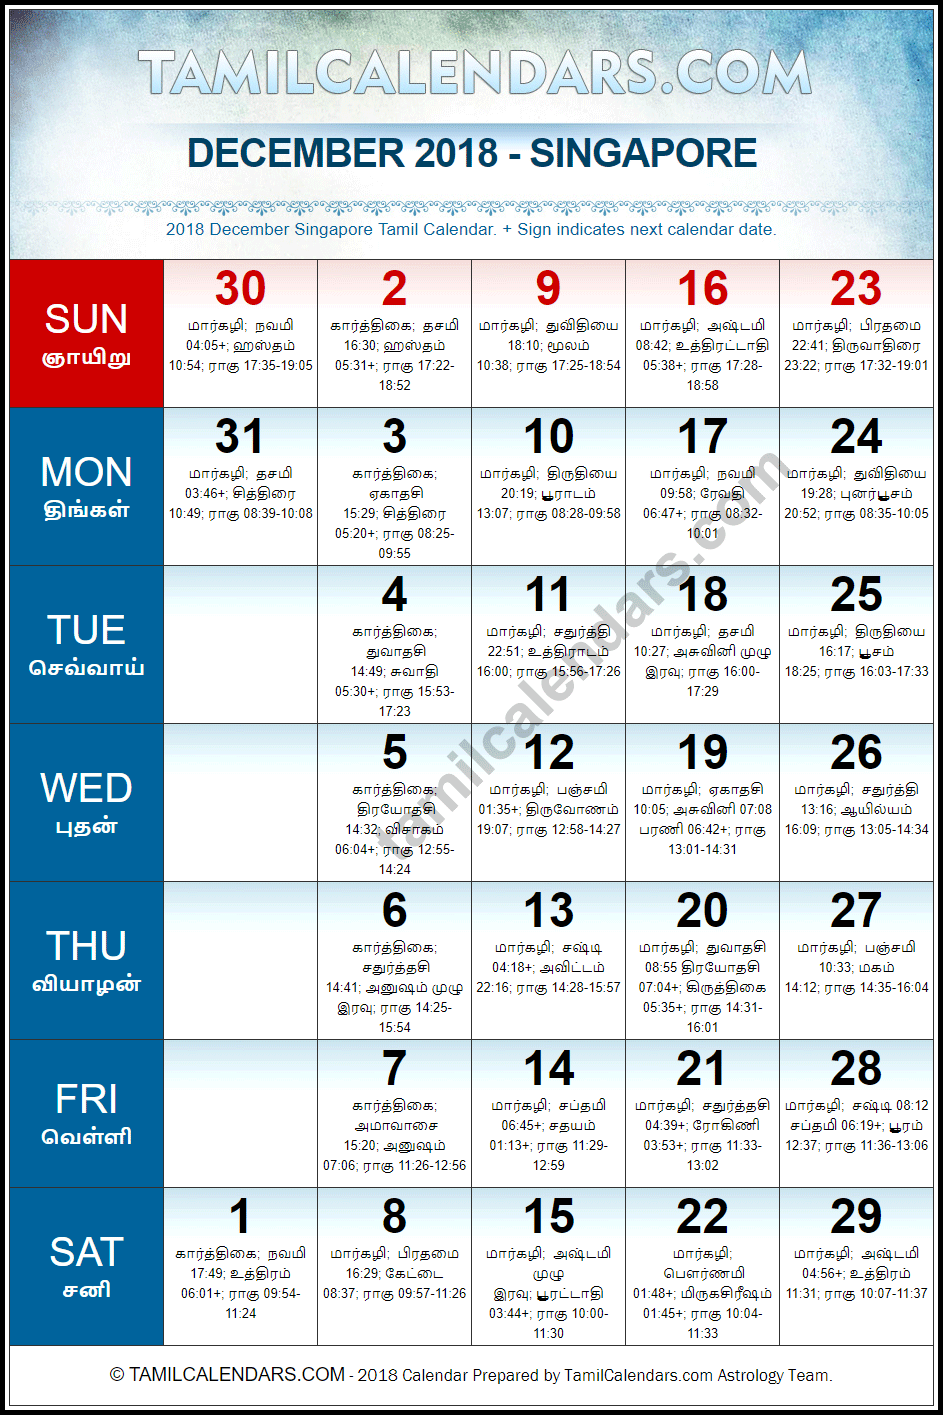 December 2018 Tamil Calendar for Singapore